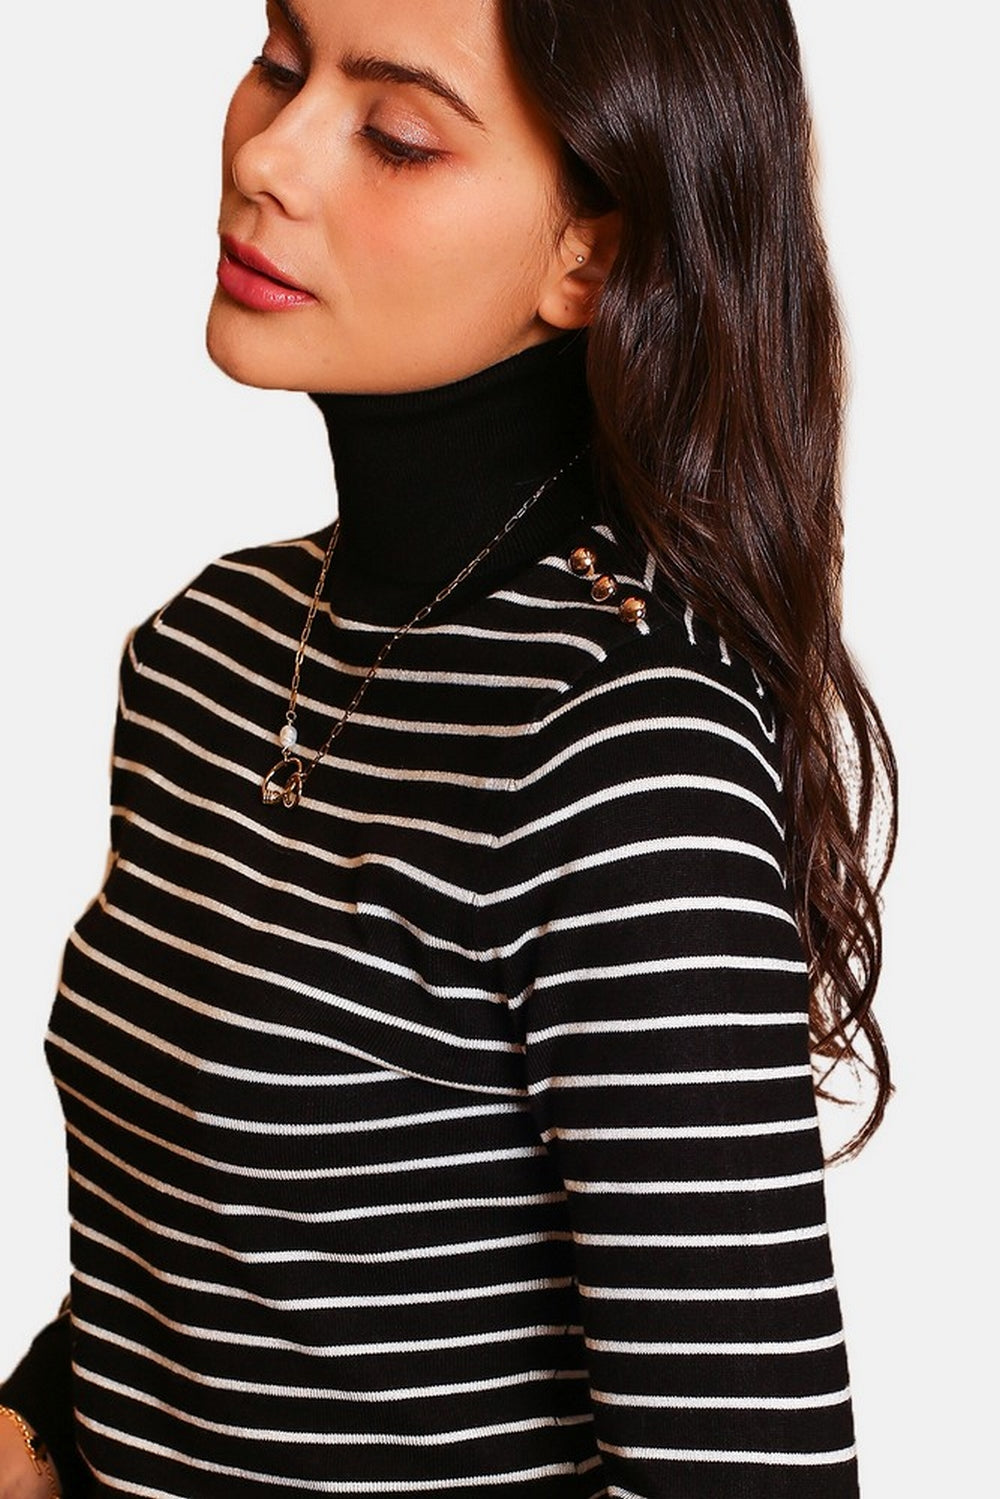 Turtleneck sailor sweater, long sleeve shoulder buttons